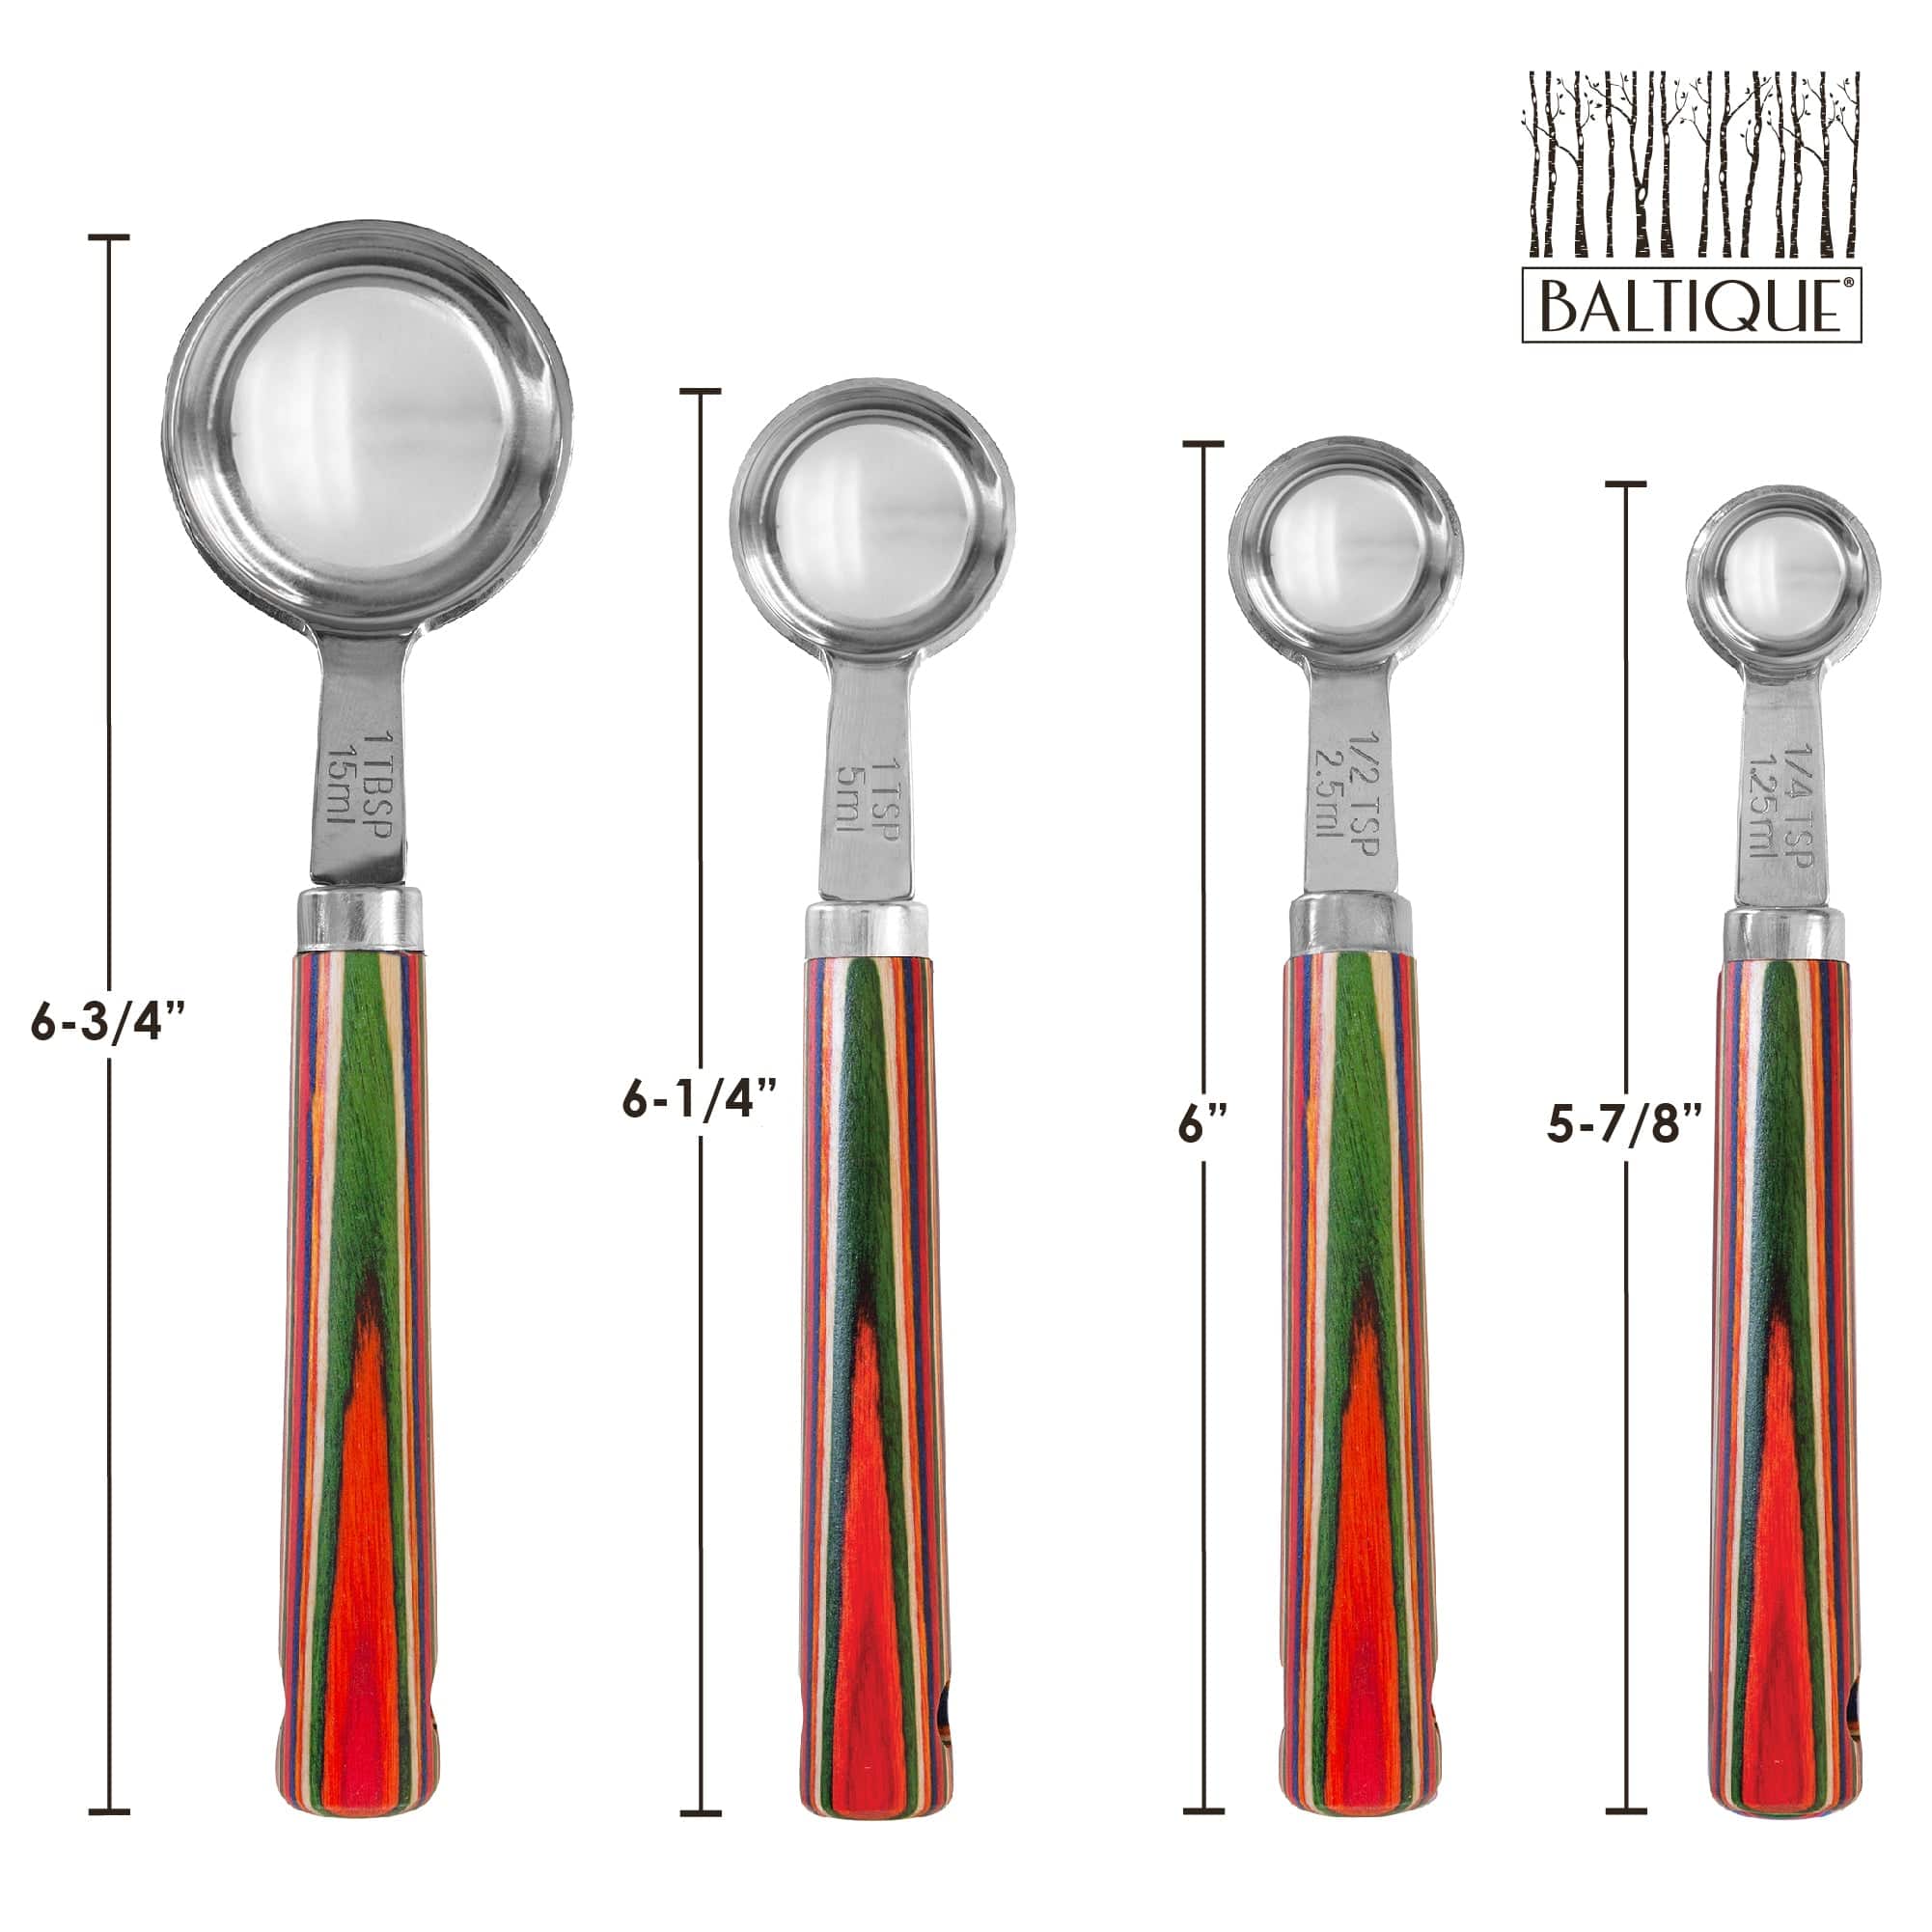 Totally Bamboo Baltique® Marrakesh Collection 4-Piece Measuring Spoon Set